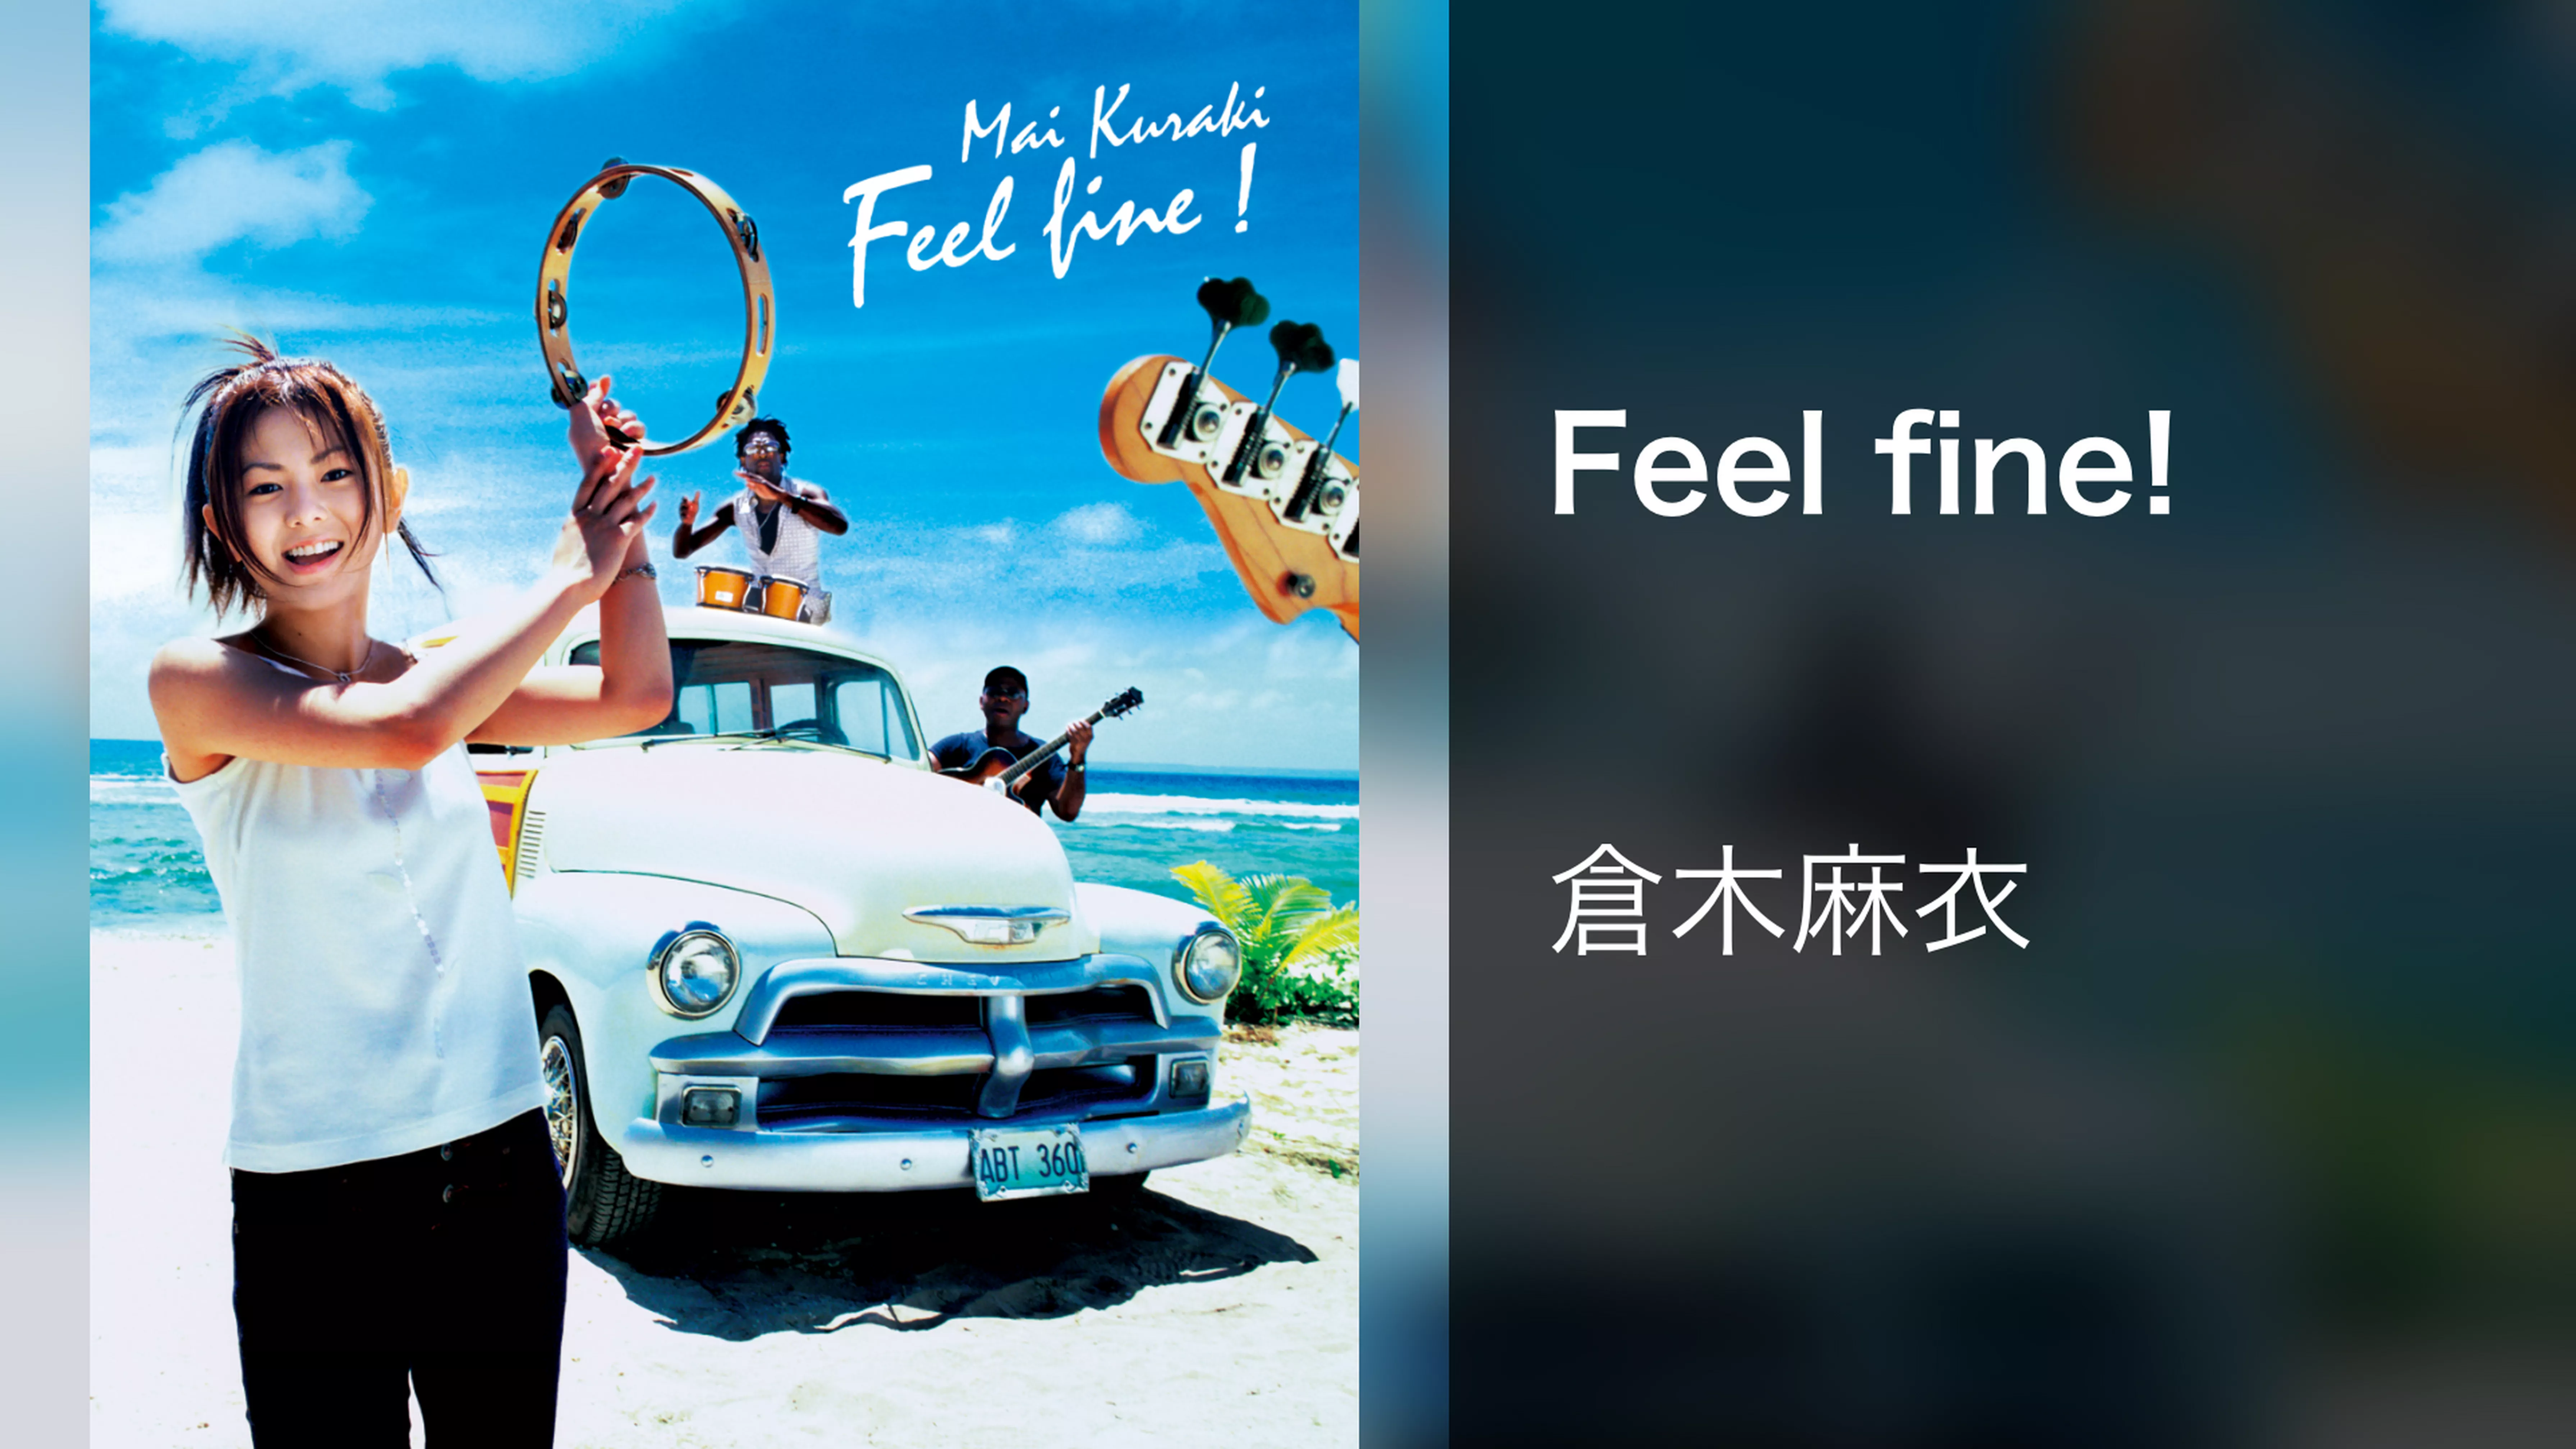 Feel fine!